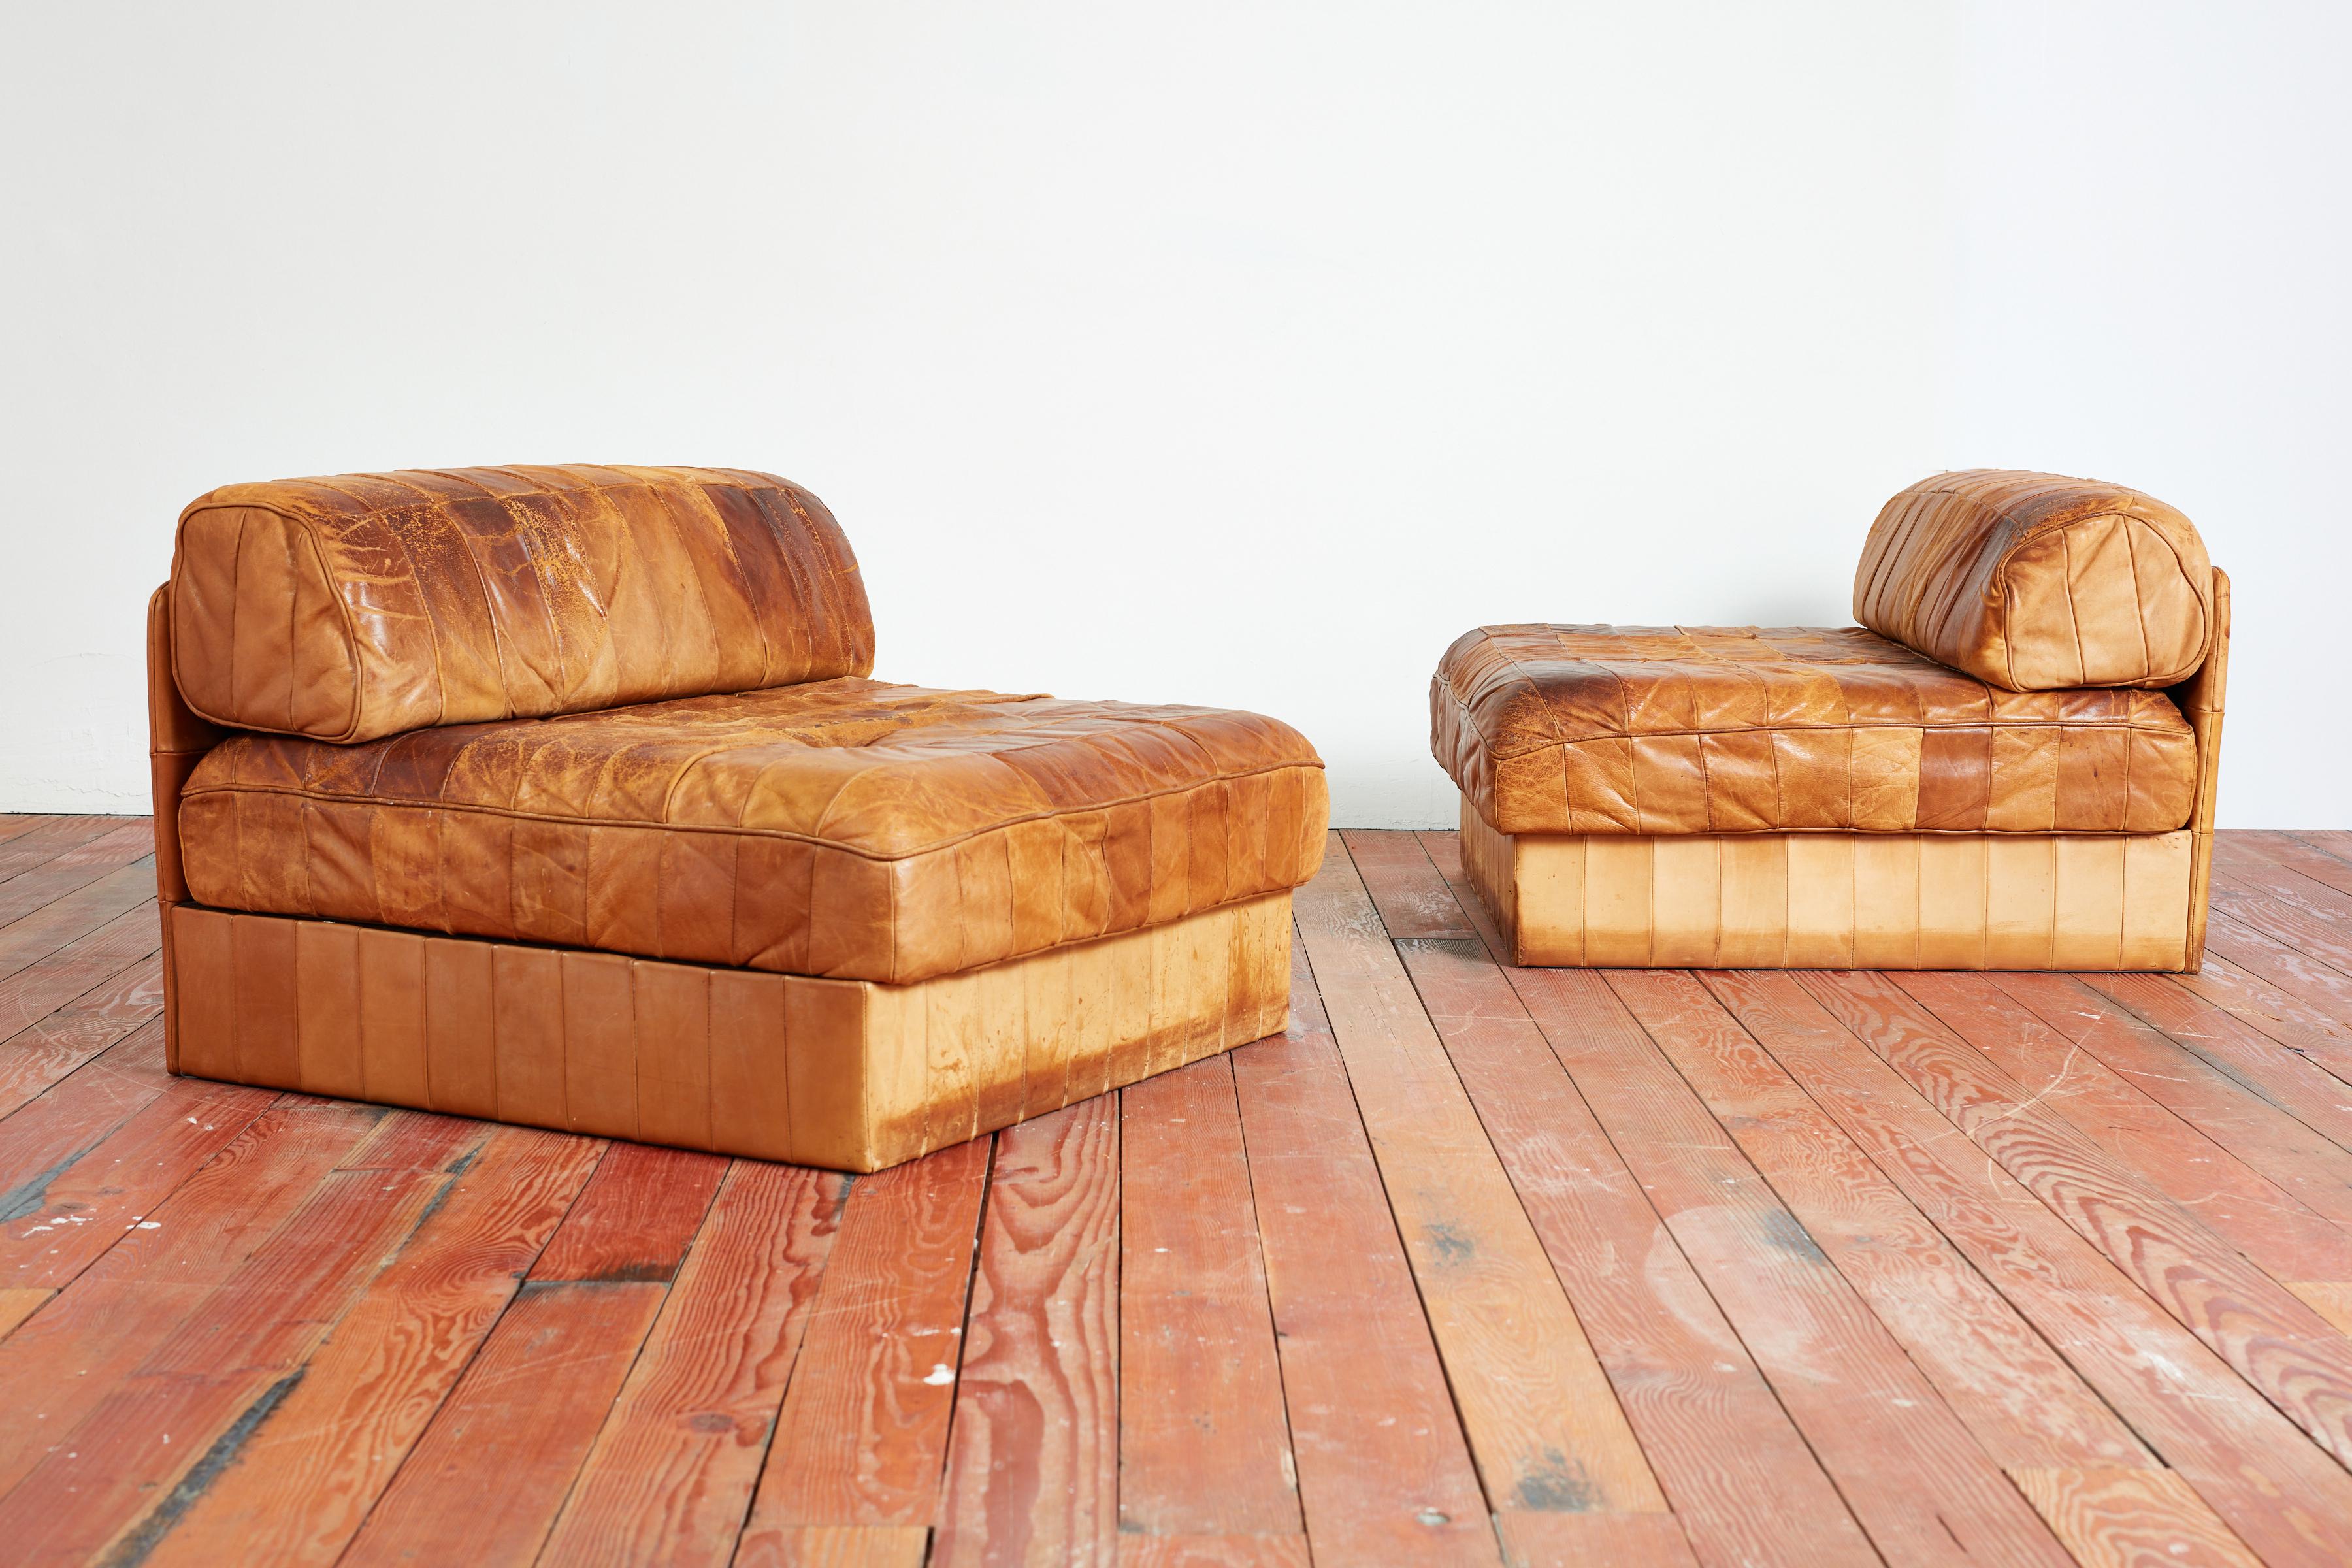 Modulare Patchwork-Stühle aus Leder von De Sede
Schweiz, 1970er Jahre 
Schöne Patina auf Patchwork Karamell Leder. 
Passende Sofa / Chaise separat erhältlich - die eine Sektional erstellen könnte. 

